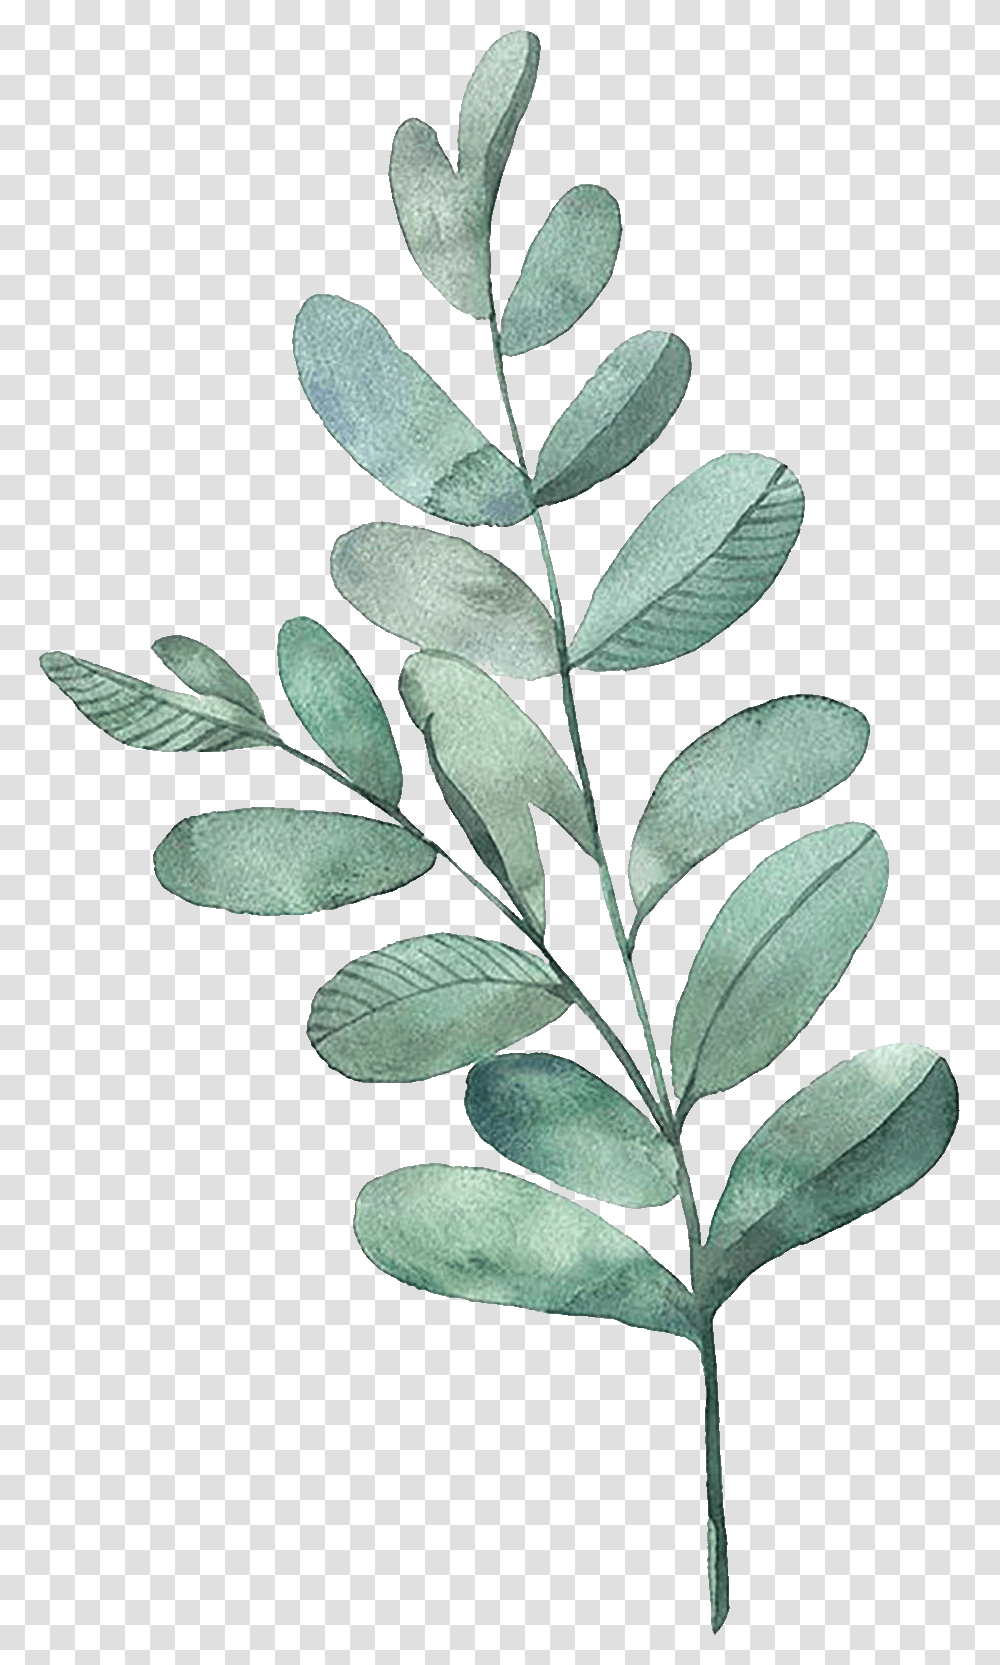 Watercolor Painting Leaf Illustration Watercolor Leaves Watercolor Leaves, Plant, Tree, Potted Plant, Vase Transparent Png